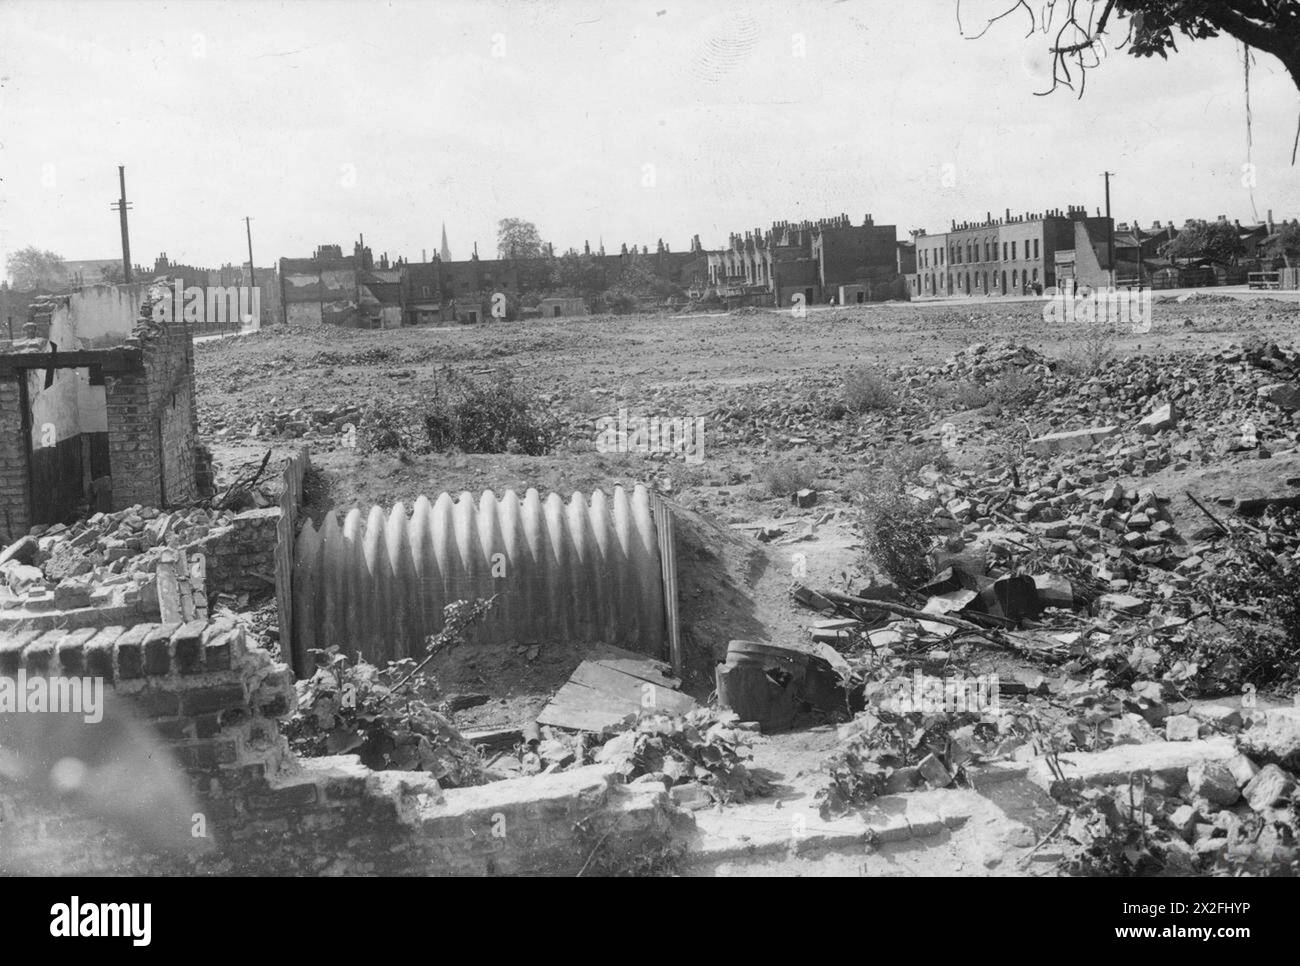 ABRI RAID AÉRIEN : 1943 - abri Anderson sur le site de bombe nettoyé tirage photographique B&W avec légende dactylographiée sur les marques de revers et de censure Banque D'Images